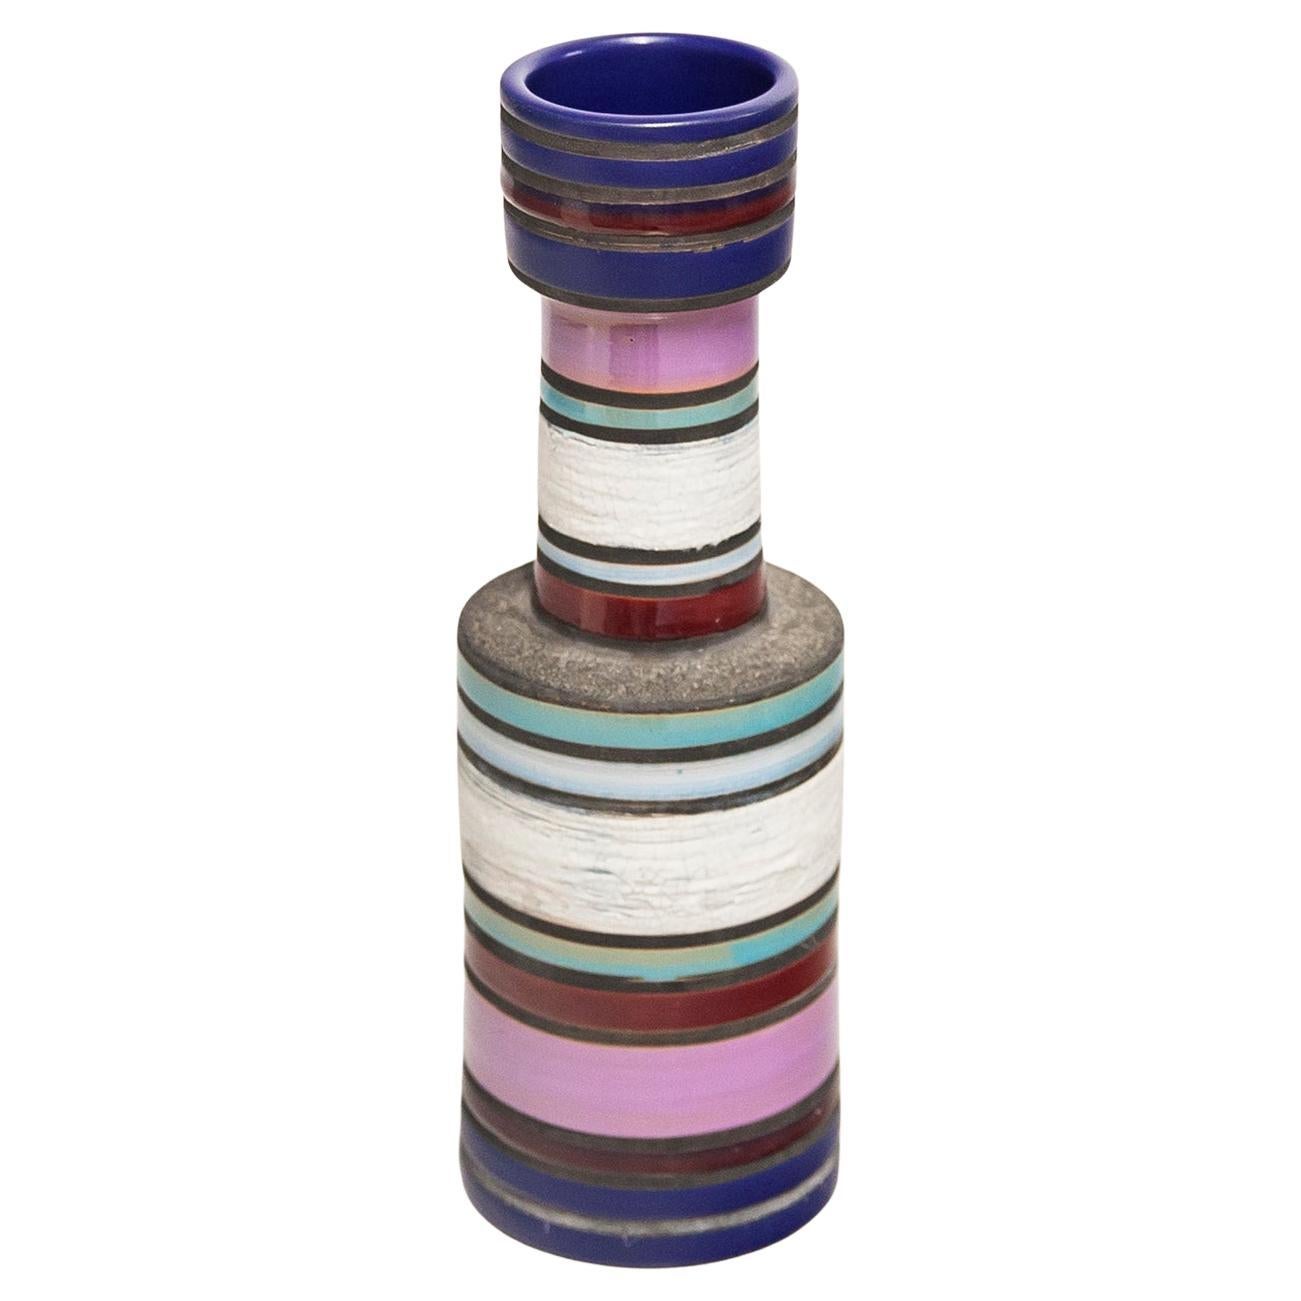 Aldo Londi Bitossi Raymor Ceramic Vase Pink Stripes Signed Italy 1960s For Sale